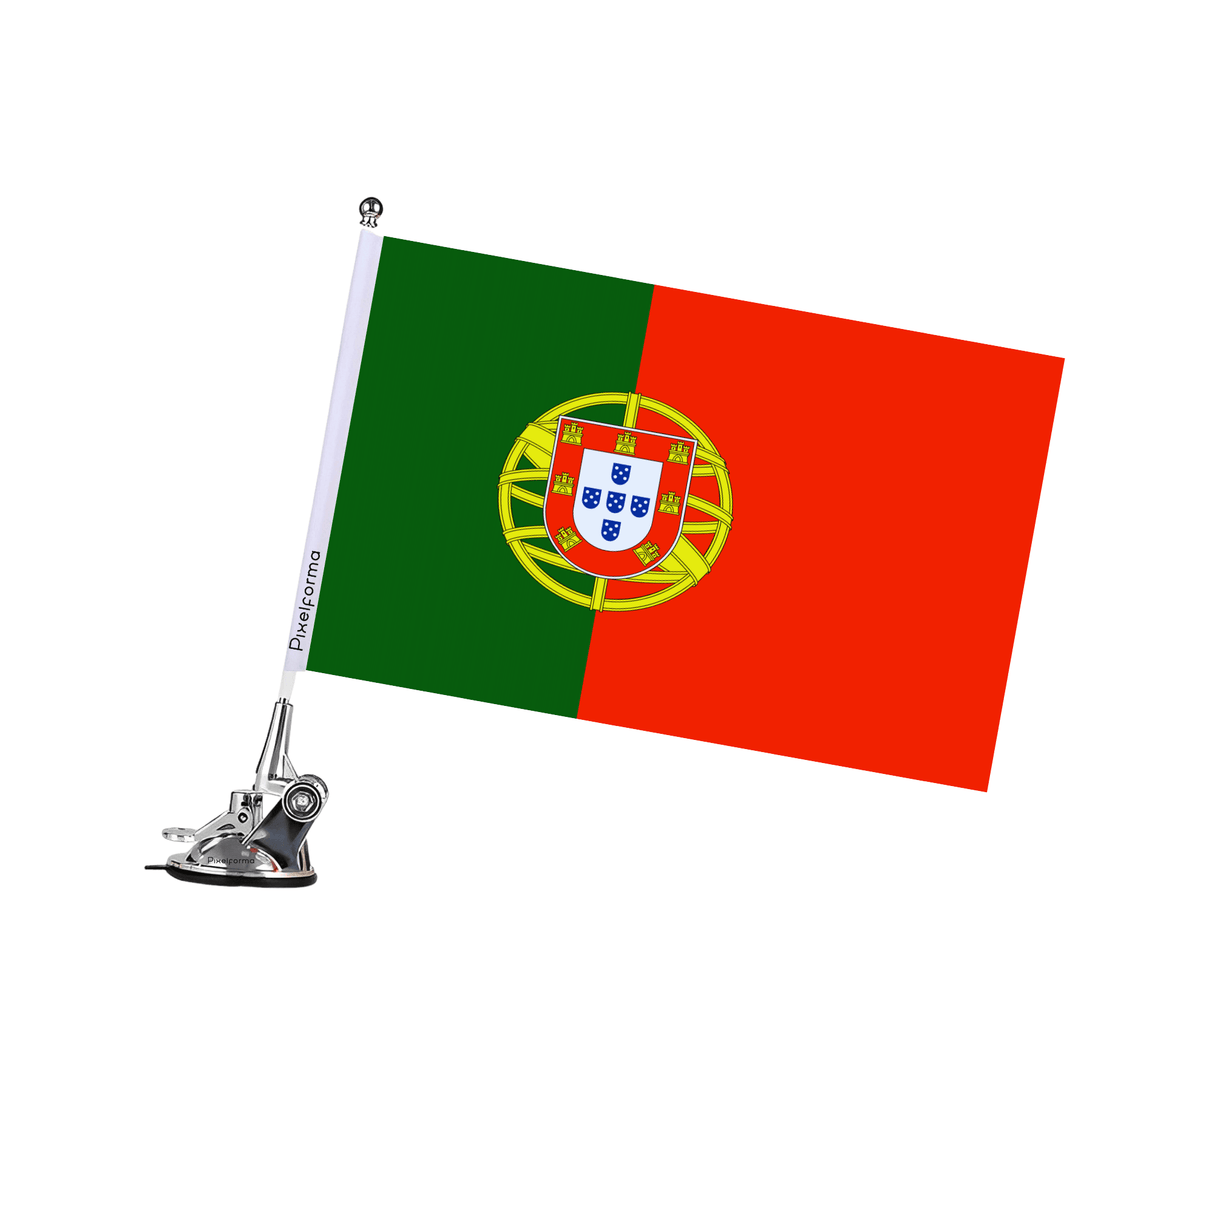 Mât à Ventouse Drapeau du Portugal - Pixelforma 